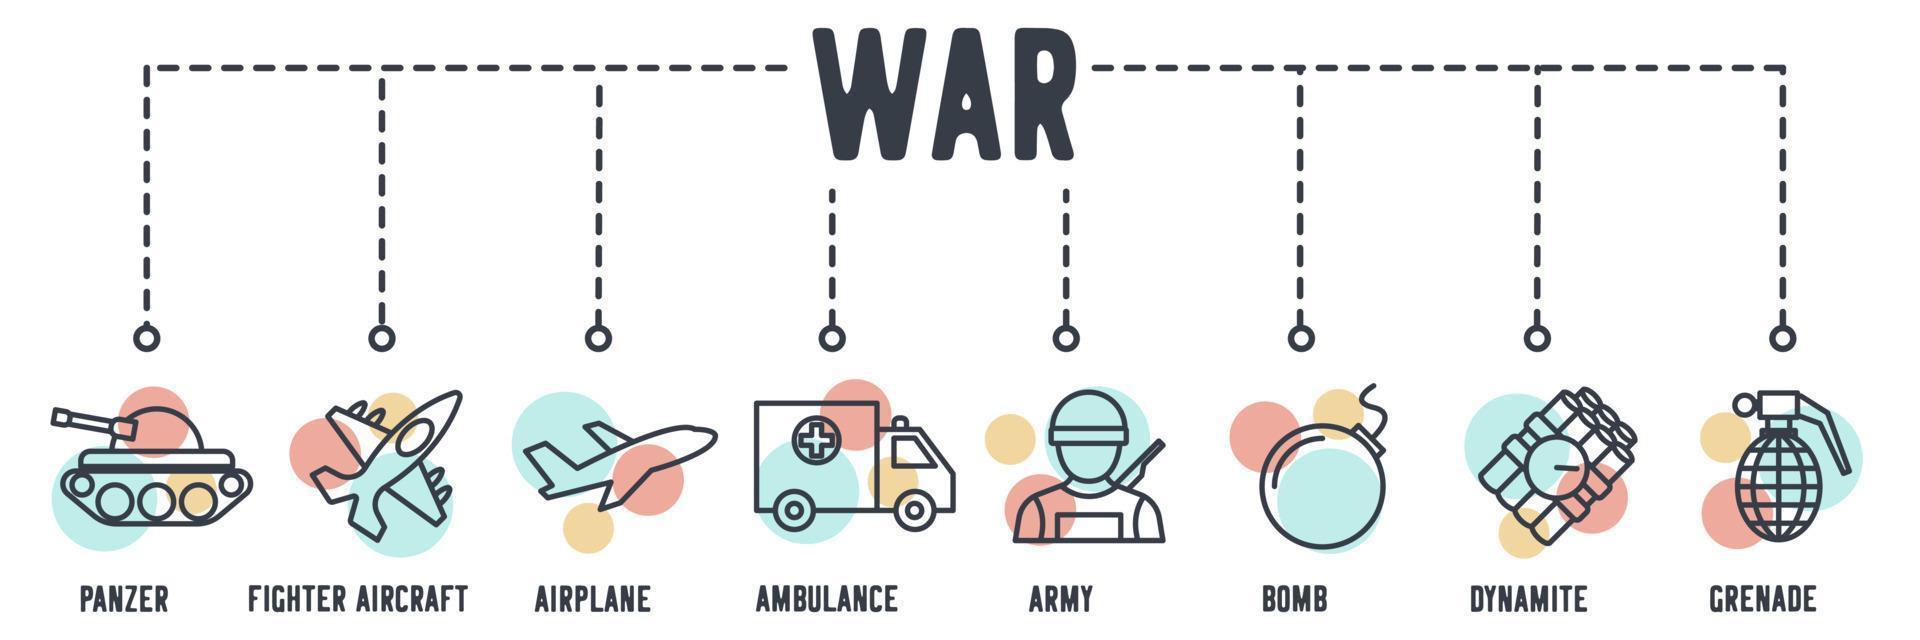 set di icone web banner dell'esercito. panzer, aereo da combattimento, aereo, ambulanza, esercito, bomba, dinamite, concetto di illustrazione vettoriale granata.